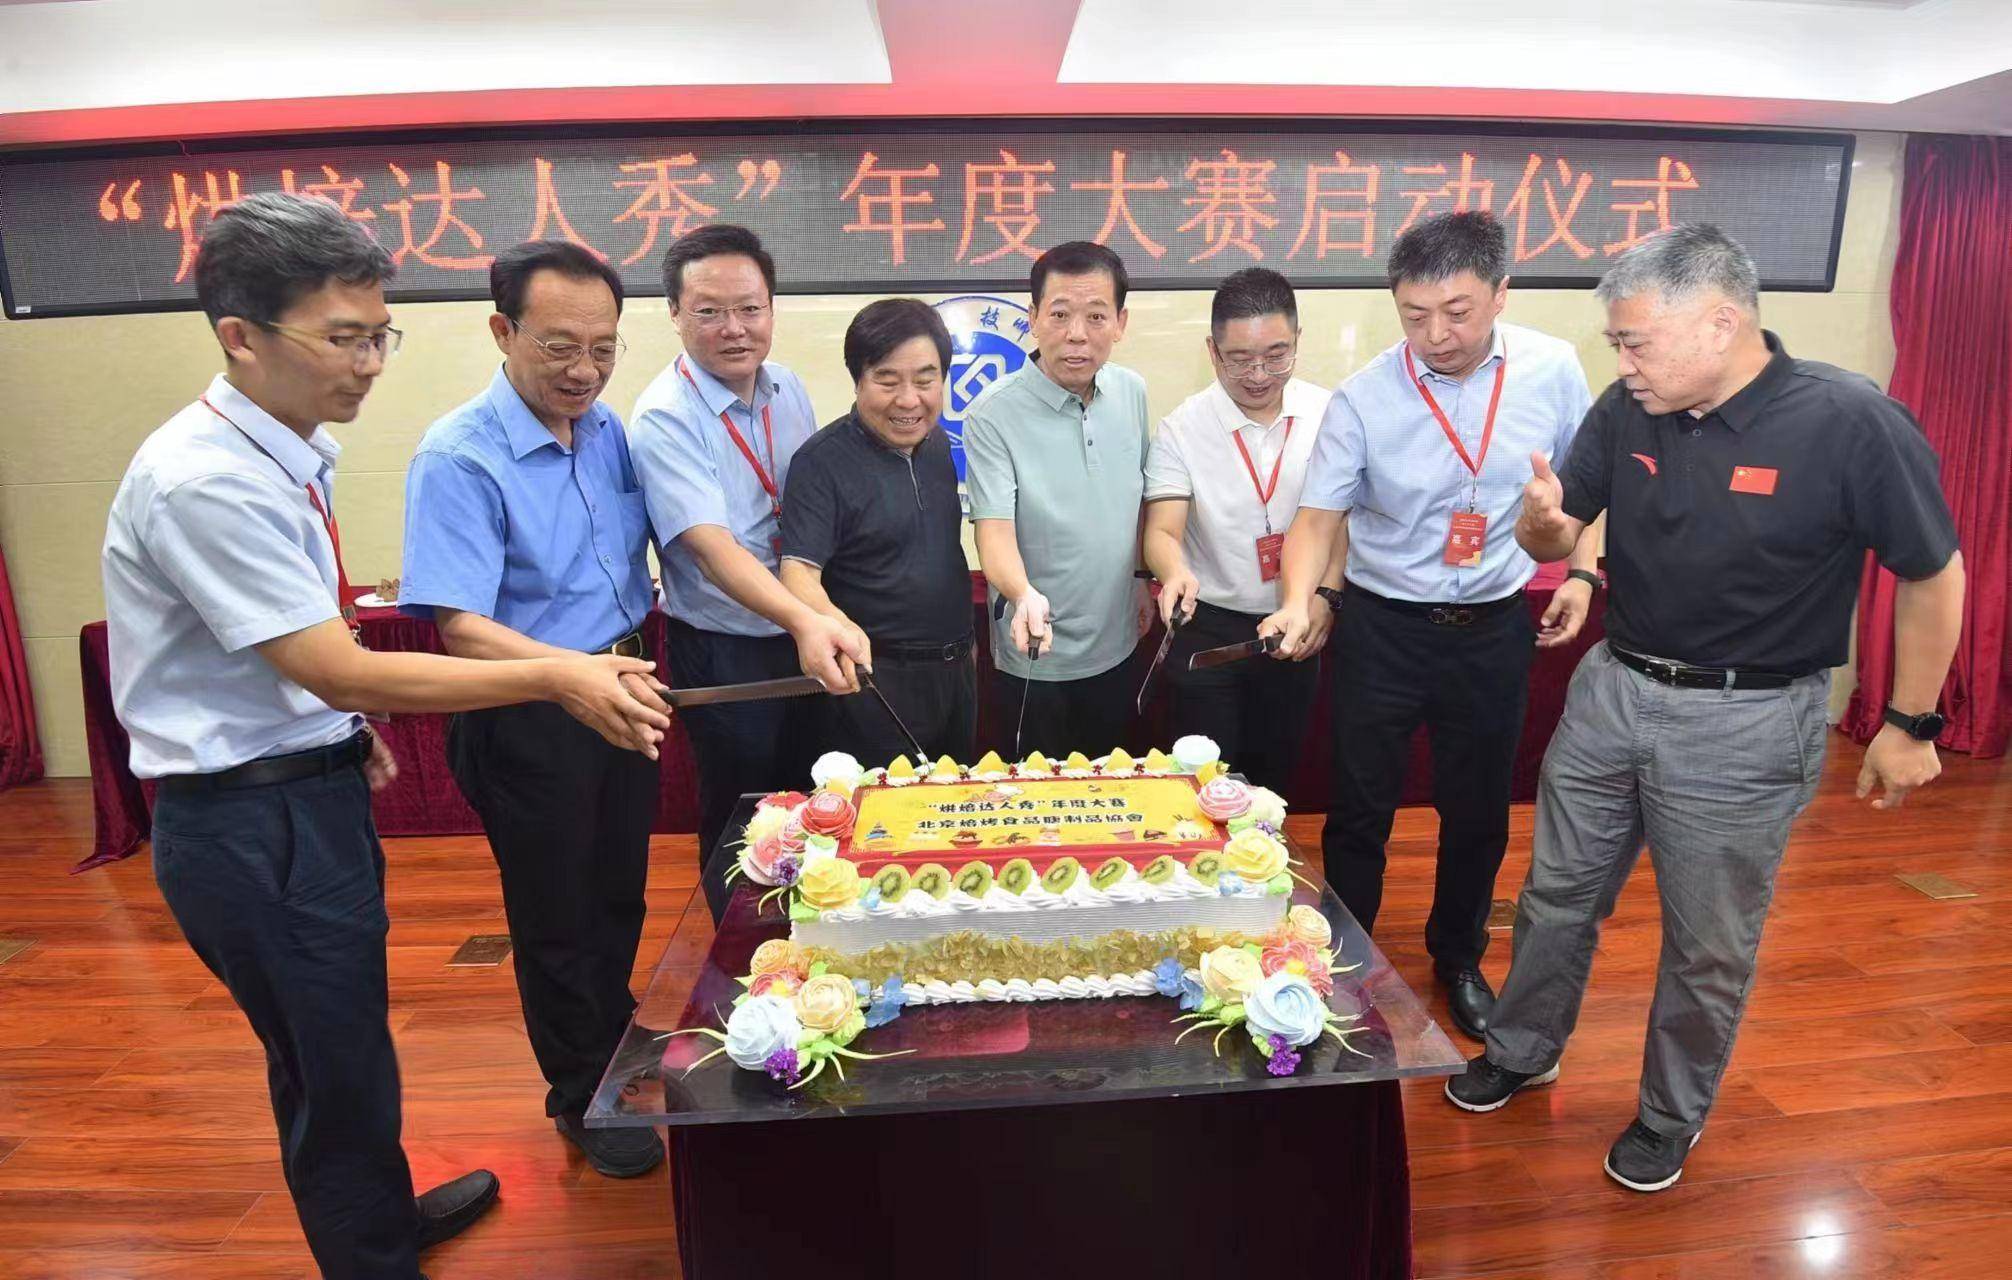 北京焙烤食品糖制品协会首届“烘焙达人秀”年度大赛活动正式启动